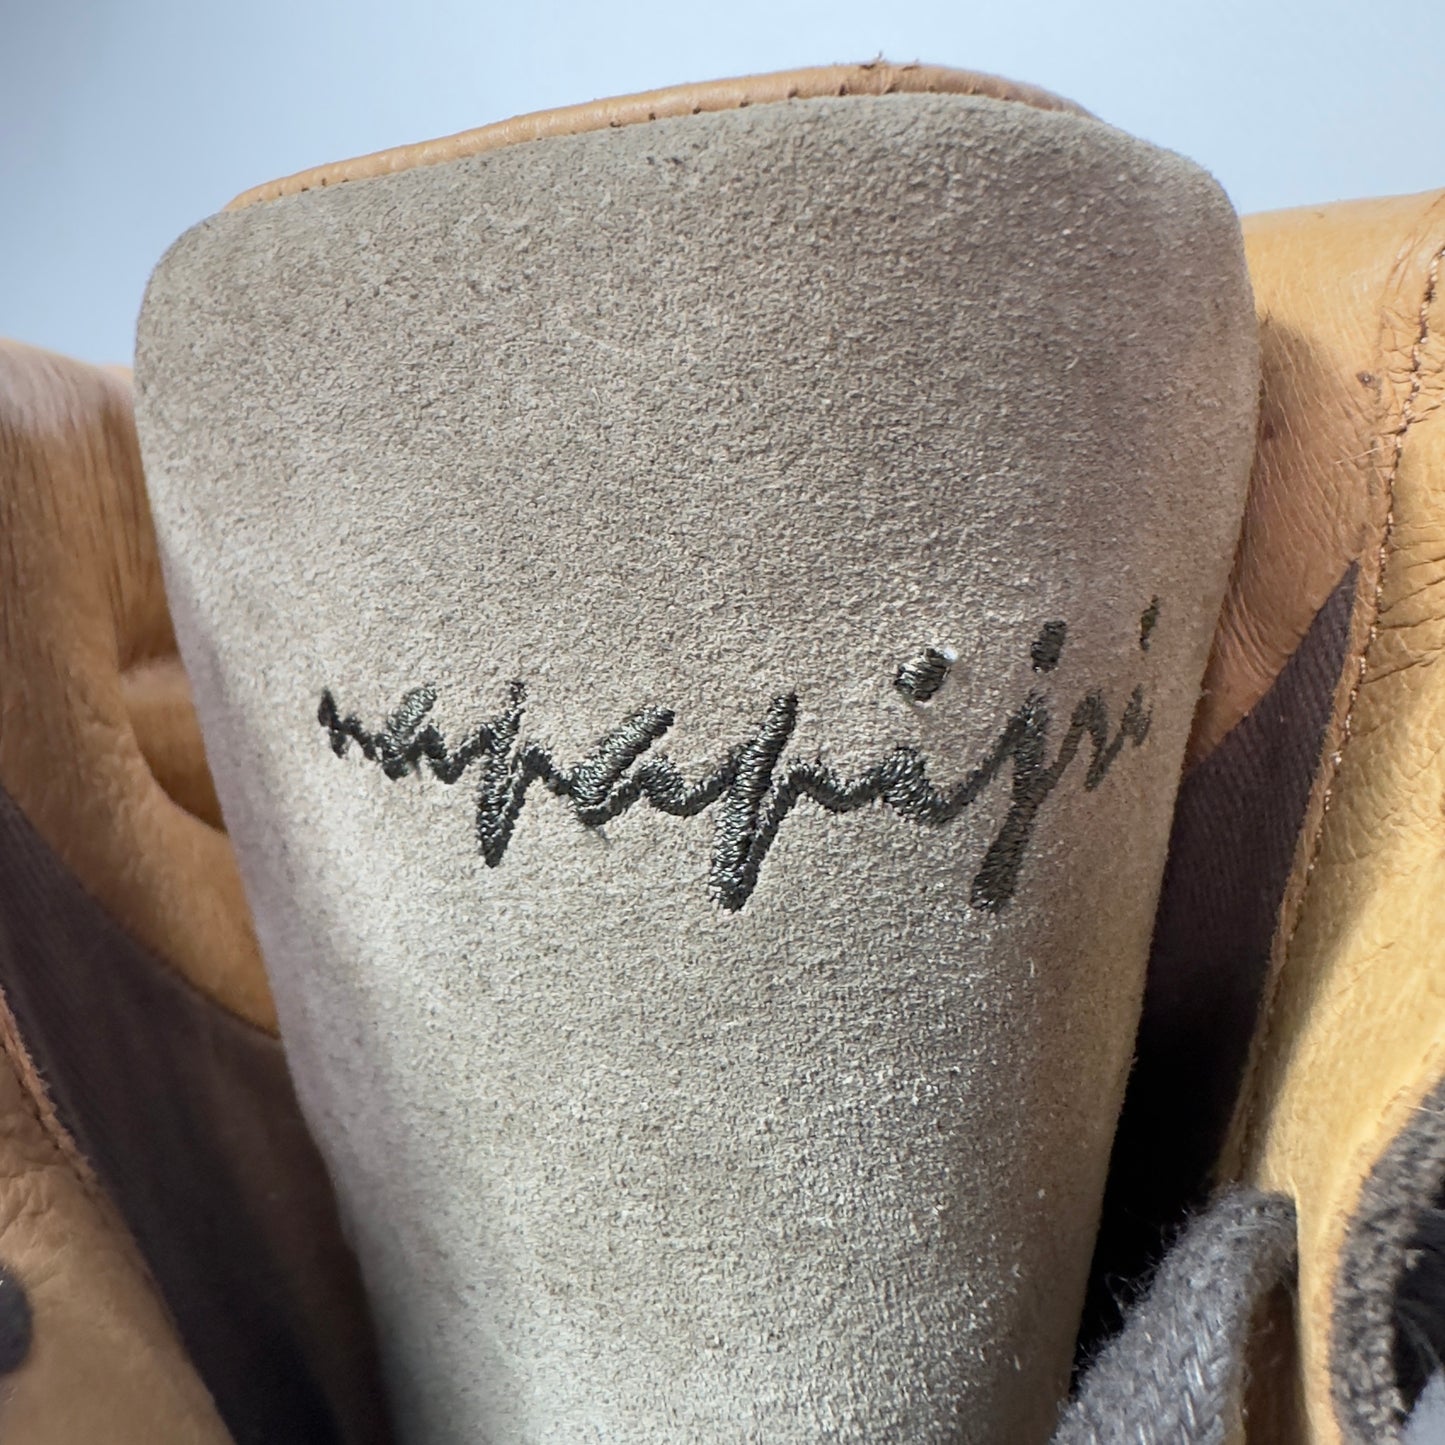 Napapijri Vintage Boxing Lace Up boots